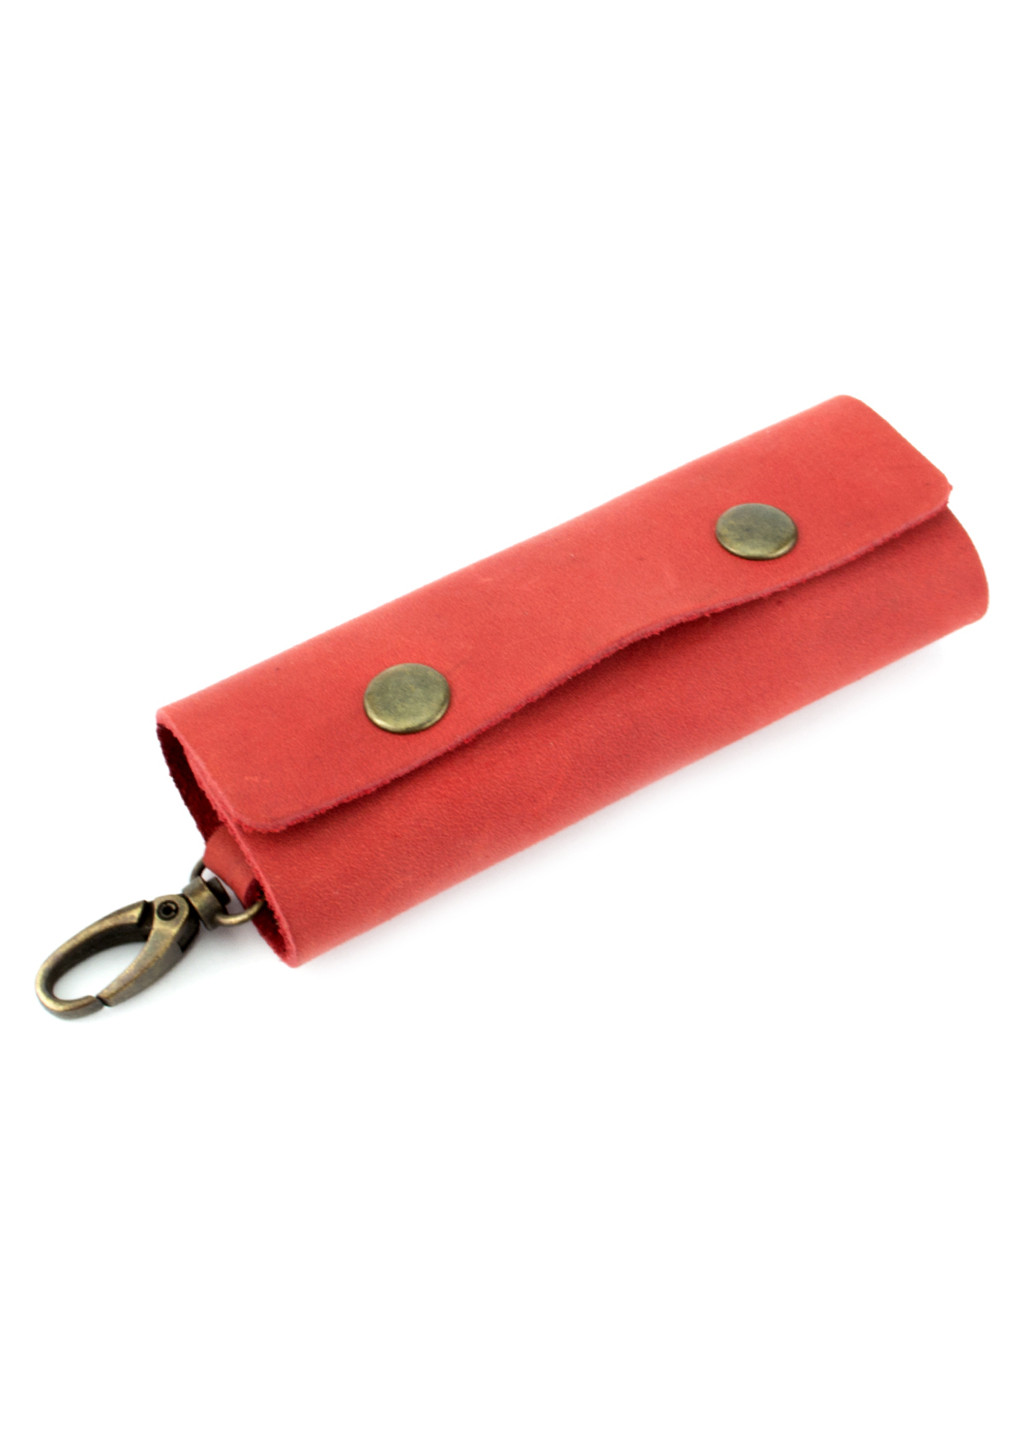 Жіночий подарунковий набір №44 червоний (гаманець, 2 обкладинки, ключниця) в коробці HandyCover (206521422)